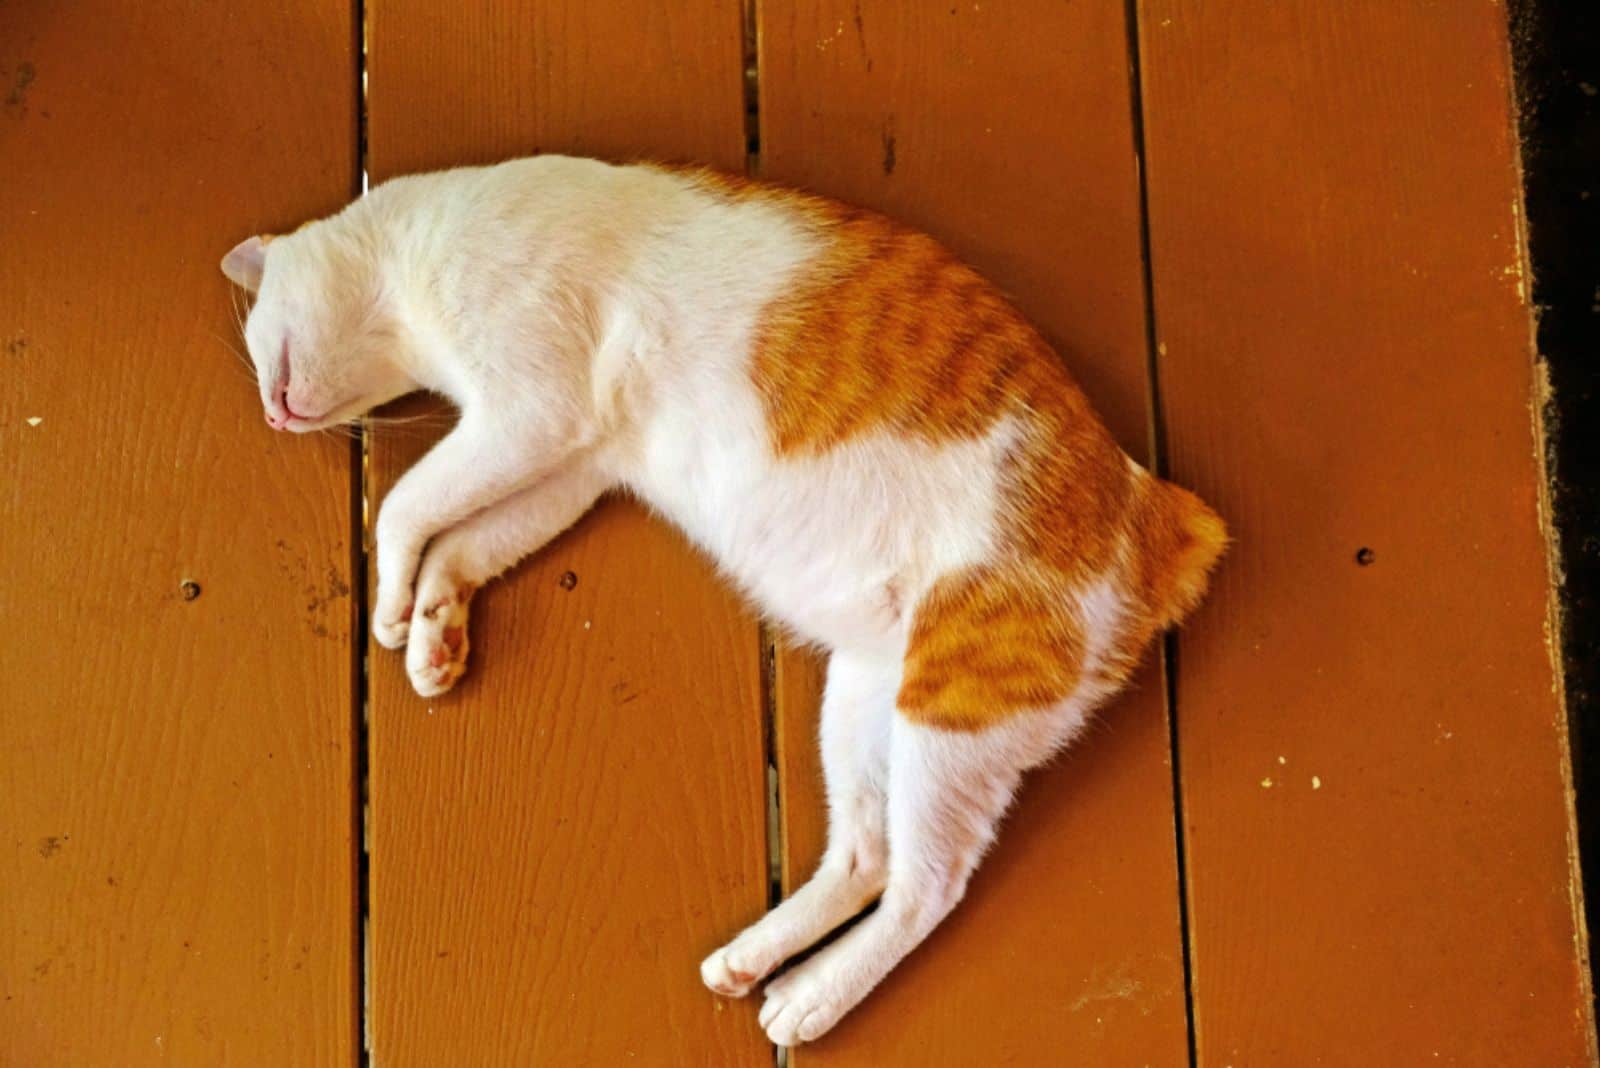 a beautiful cat lies dead on a wooden floor